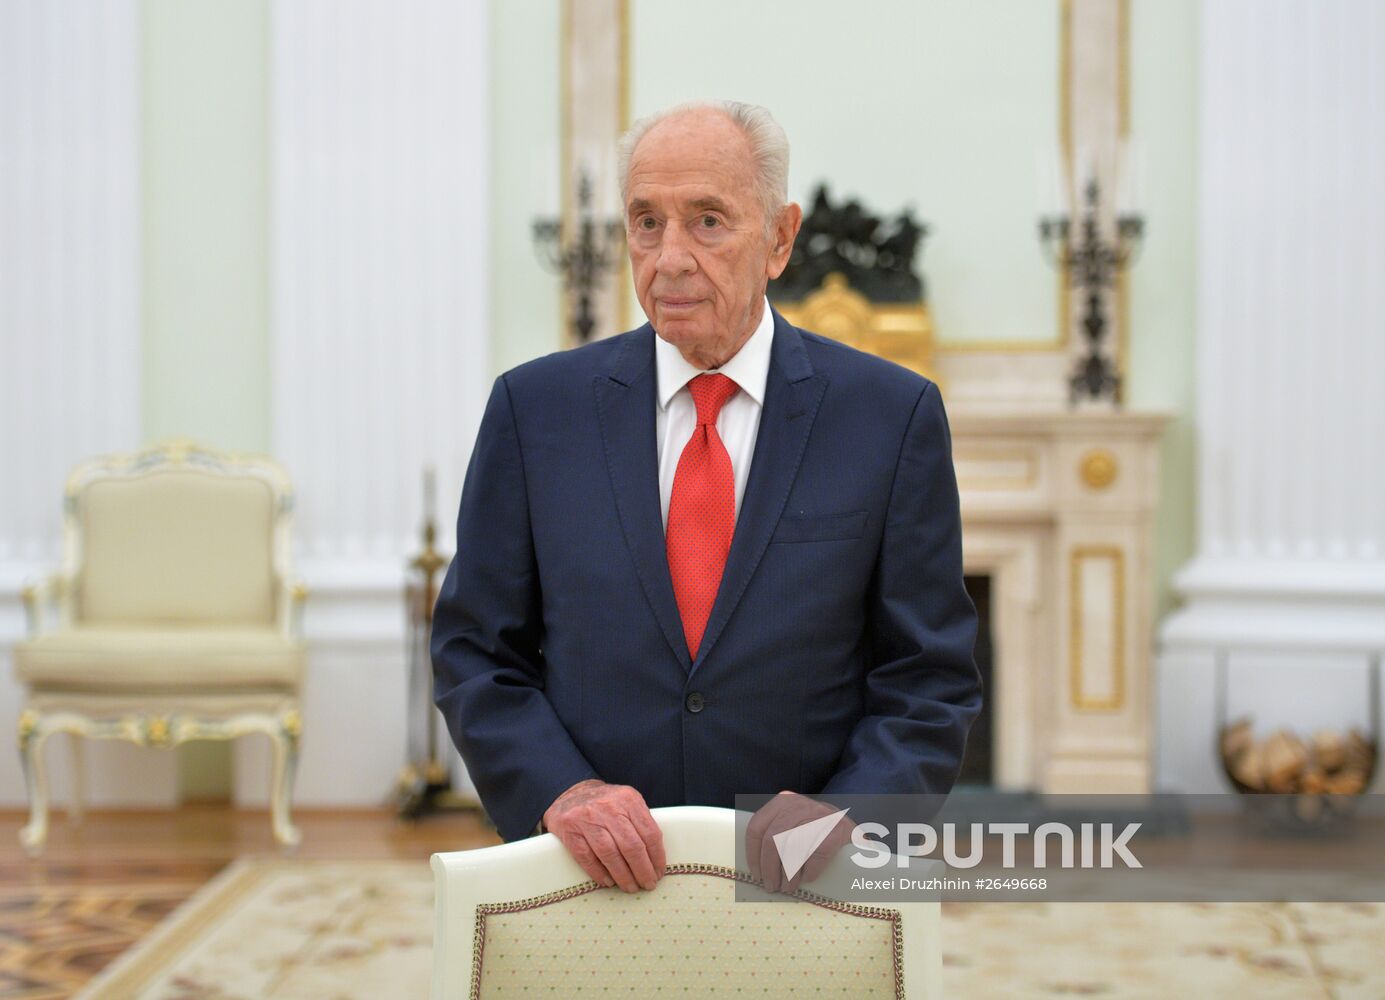 President Vladimir Putin meets former Israeli President Shimon Peres